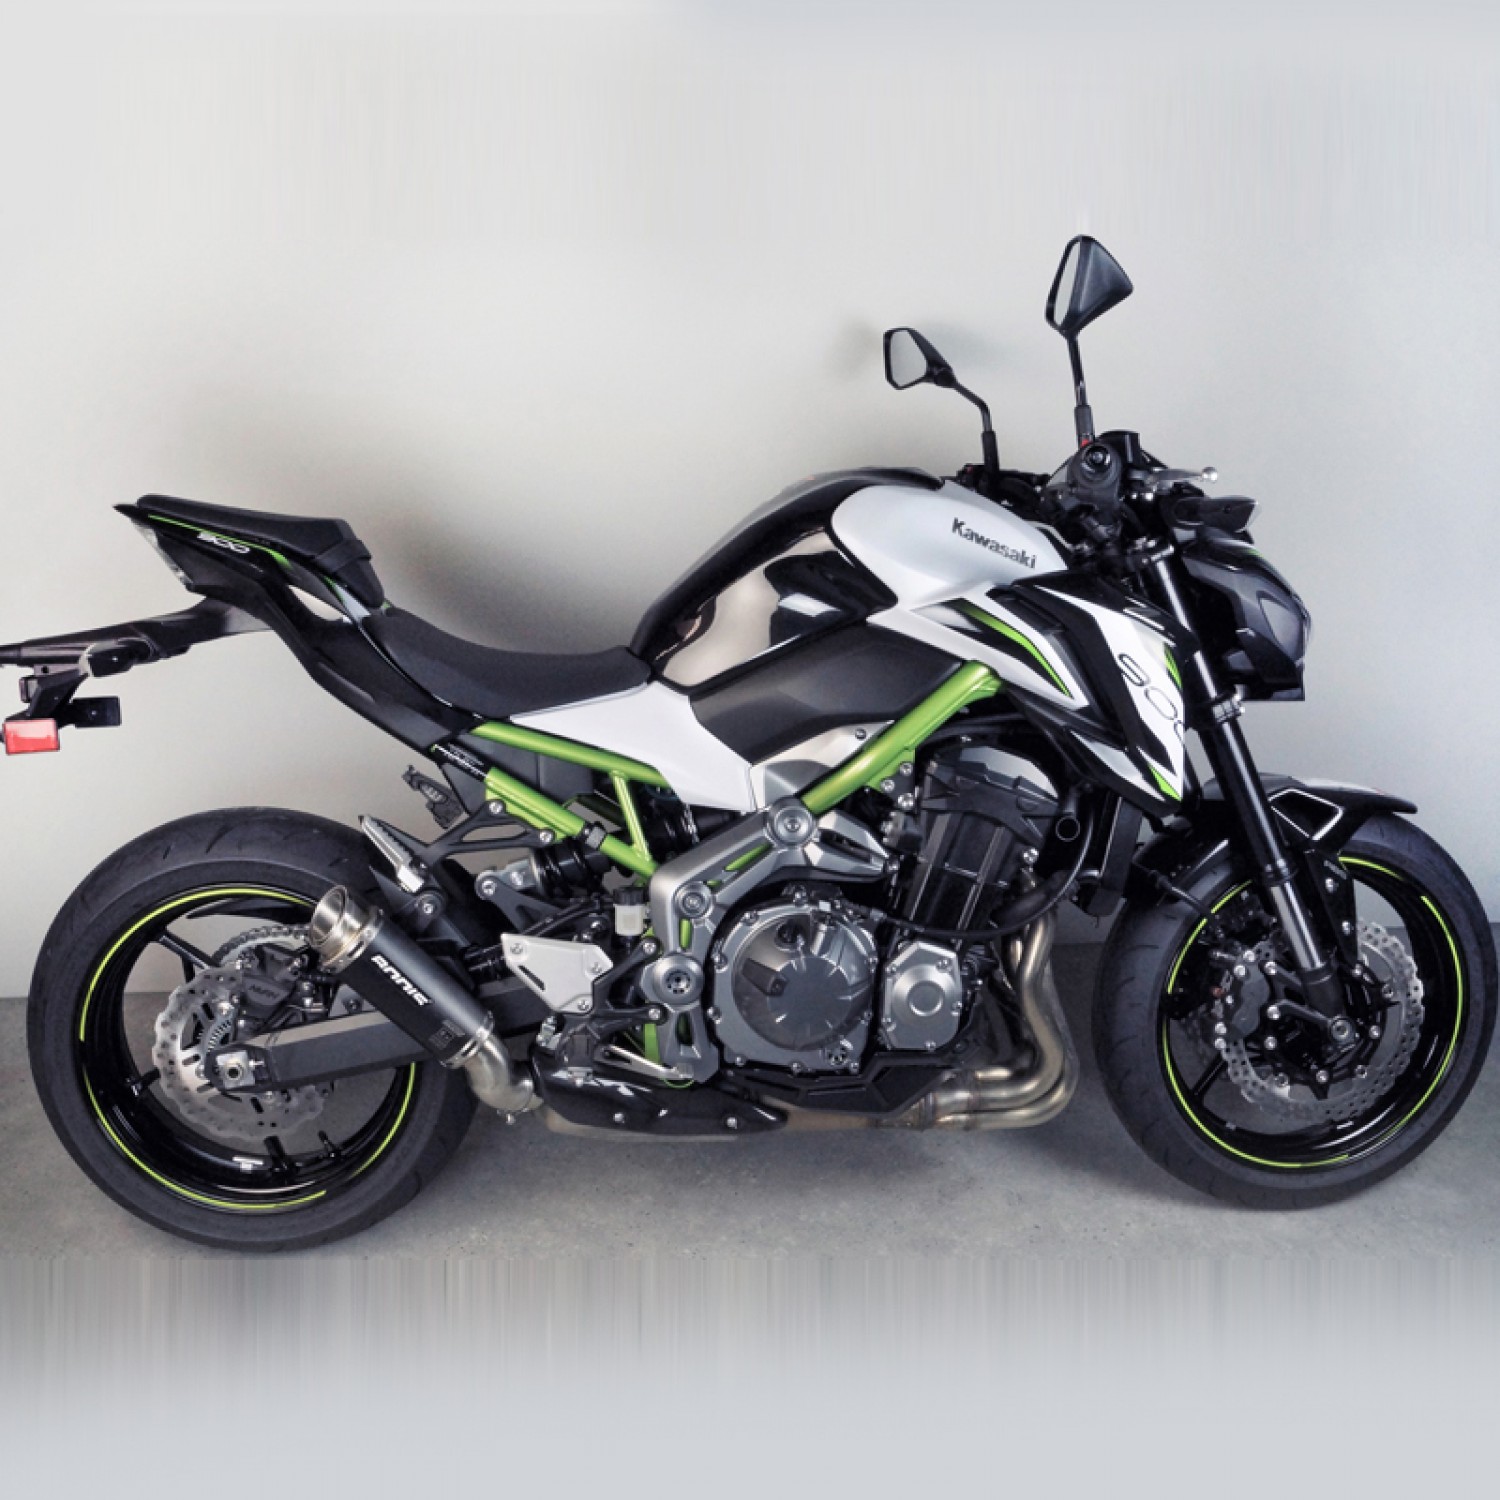  Moto Échappement Échappement Modifié Slip Mi Lien Tuyau  Catalyseur Supprimer Éliminateur Ajustement Amélioré pour Kawasaki Z900  Z900e 2017-2022 Décorer (Color : Silver)